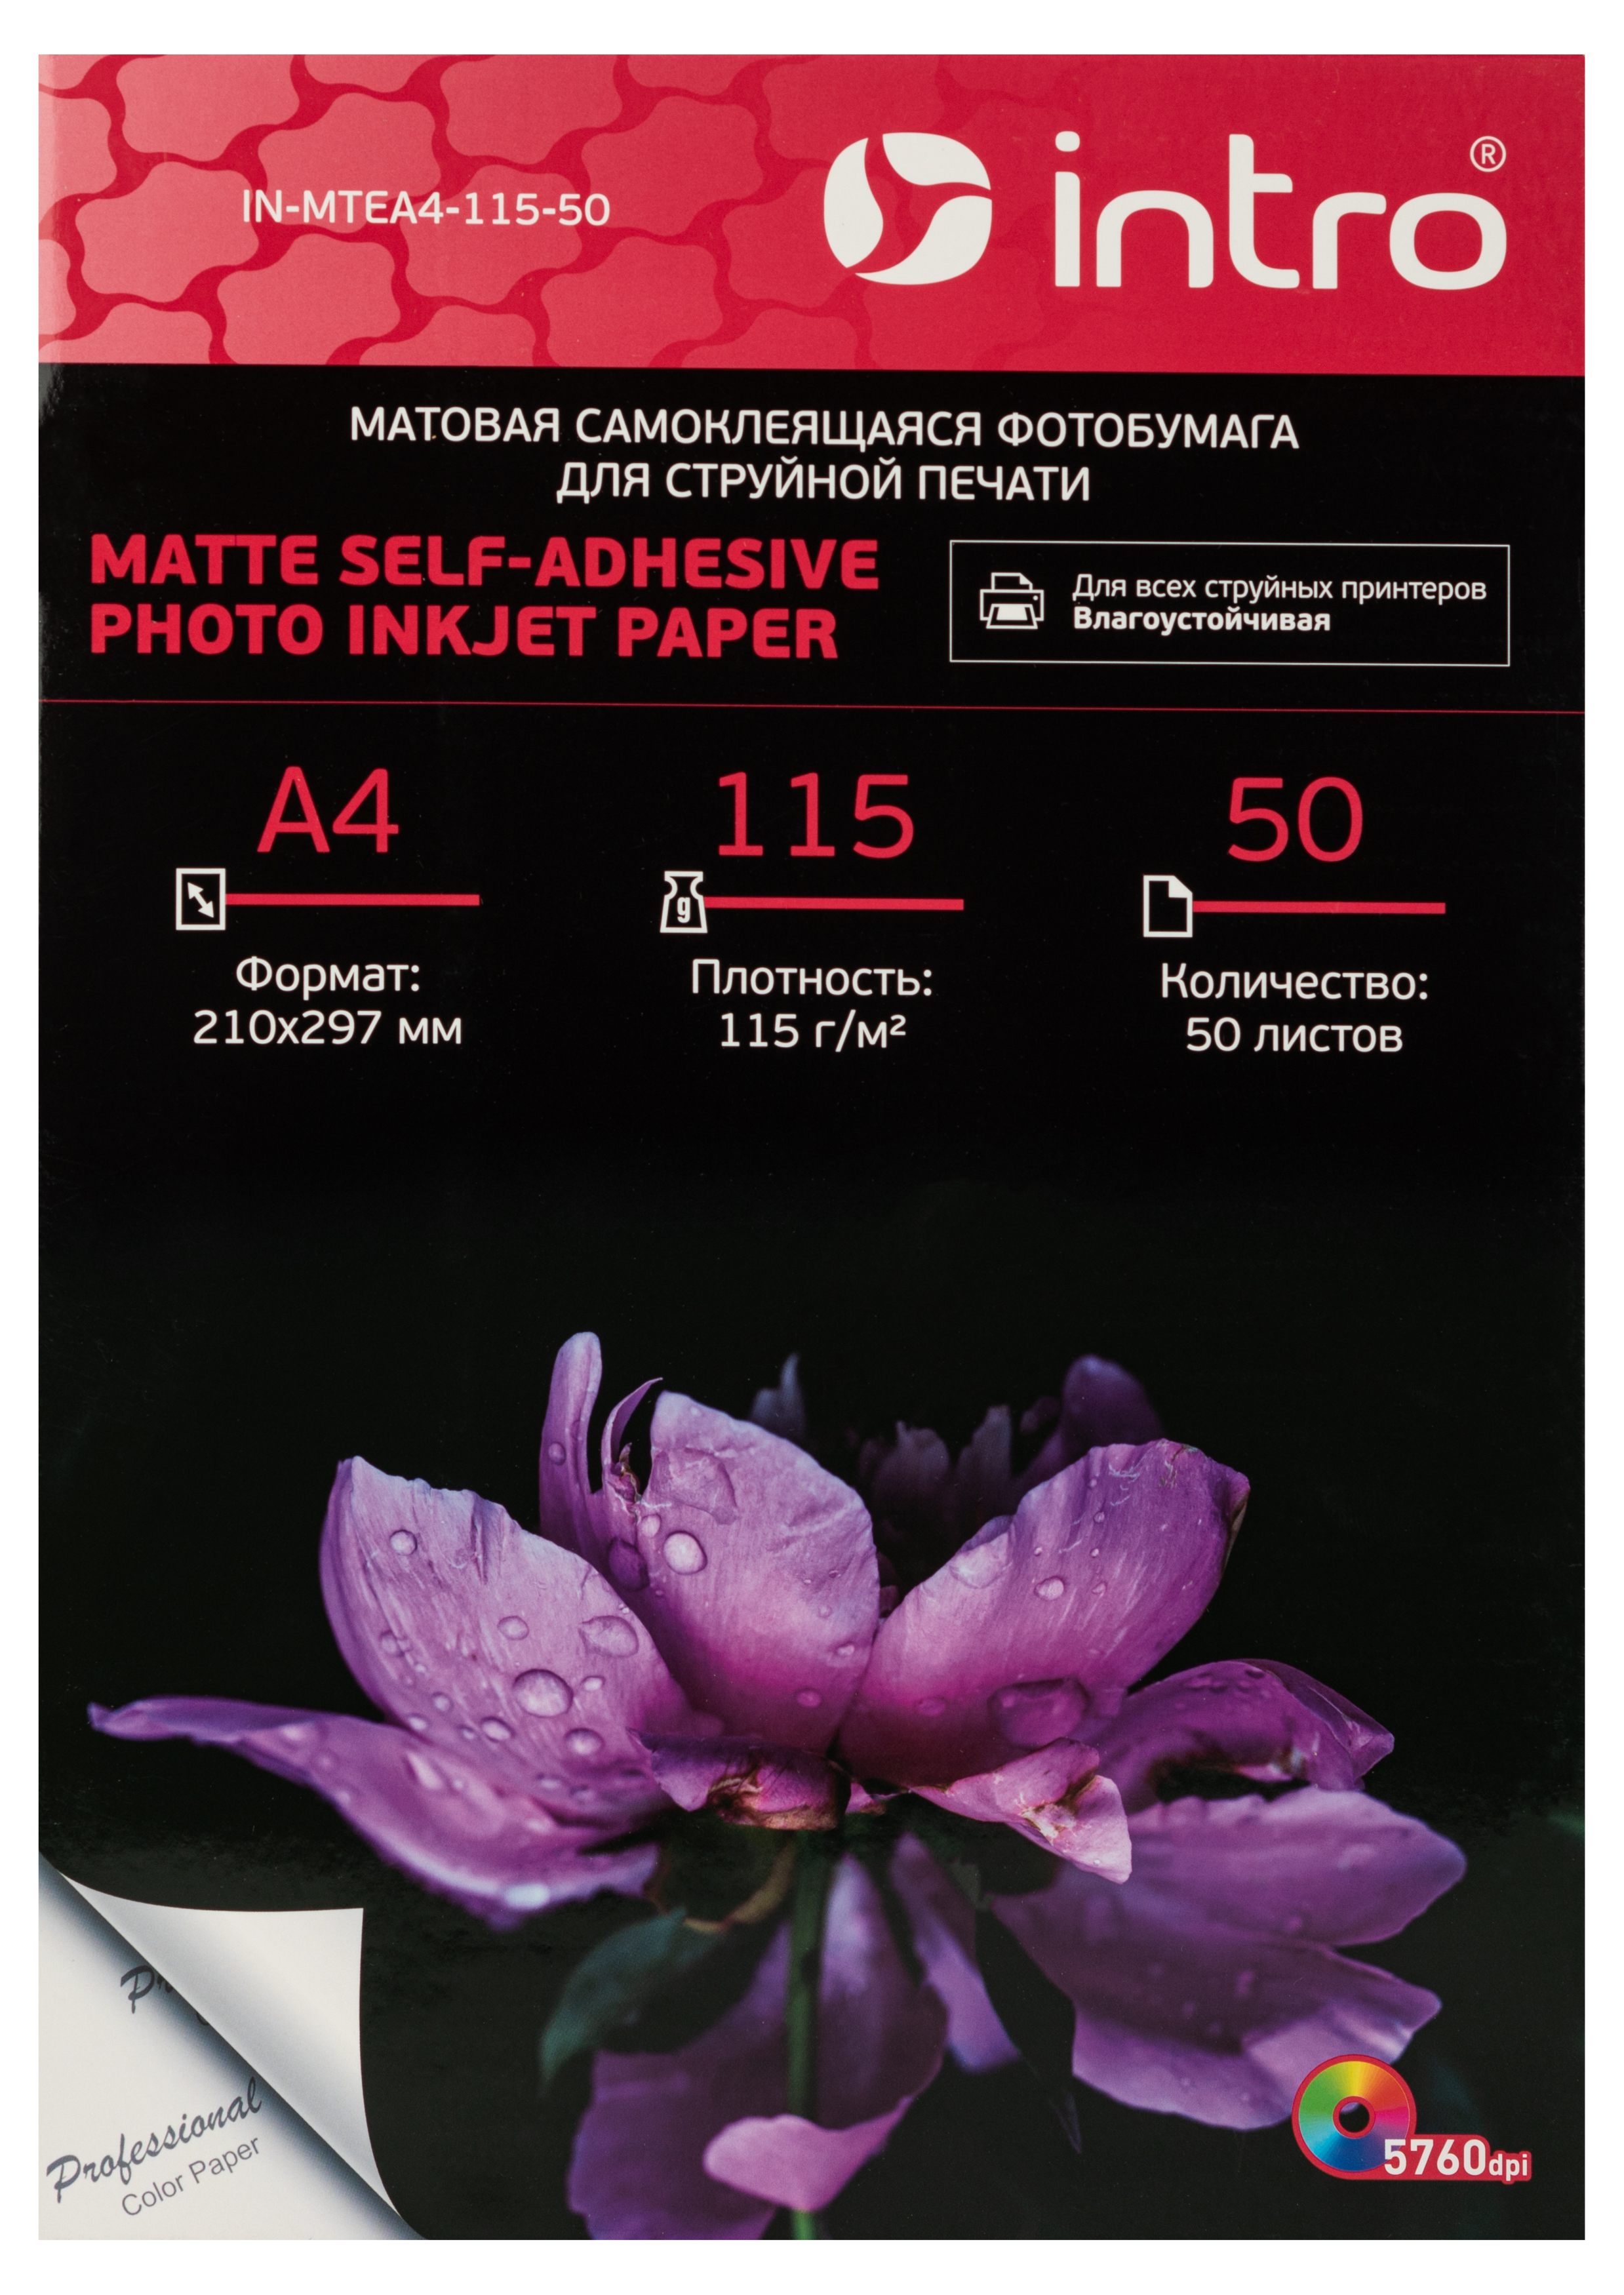 Фотобумага Intro MTEA4-115-50 матовая самоклеящаяся 115g/м2 А4 50 листов для струйной печати